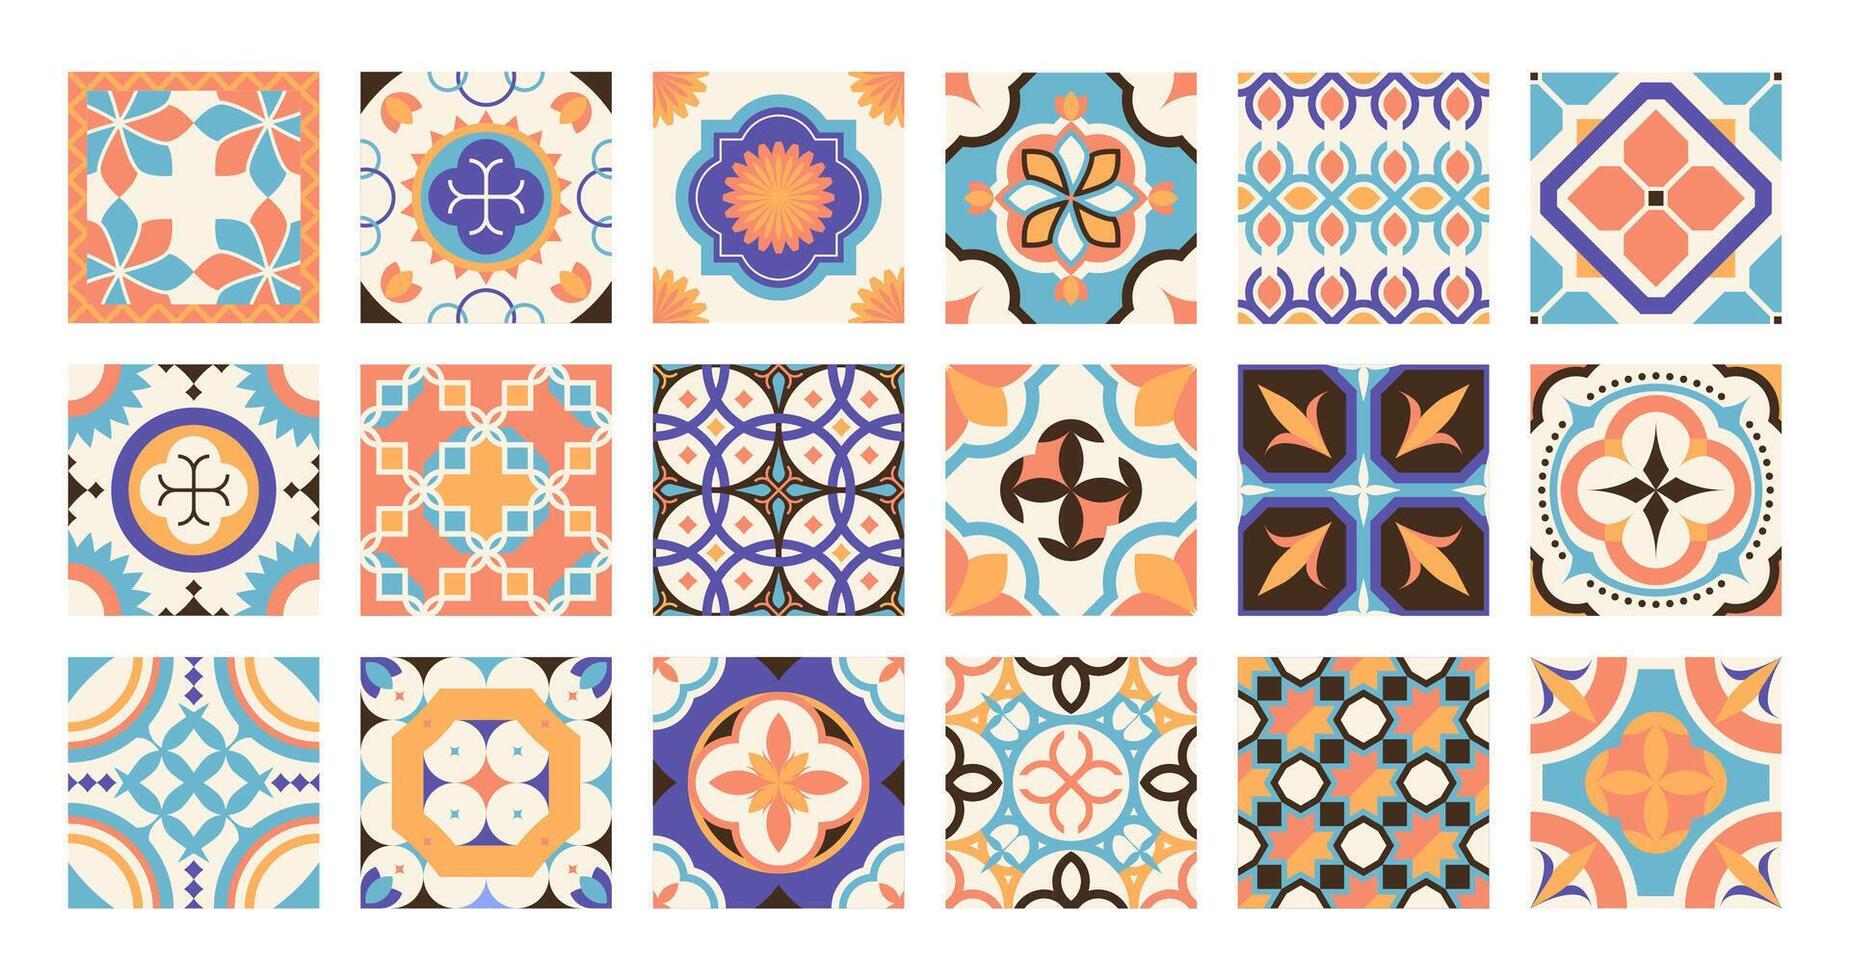 Lisboa telha padronizar. tradicional Português espanhol marroquino mosaico cerâmica, decorativo ornamentado quadrado azulejos Mediterrâneo motivo. vetor conjunto